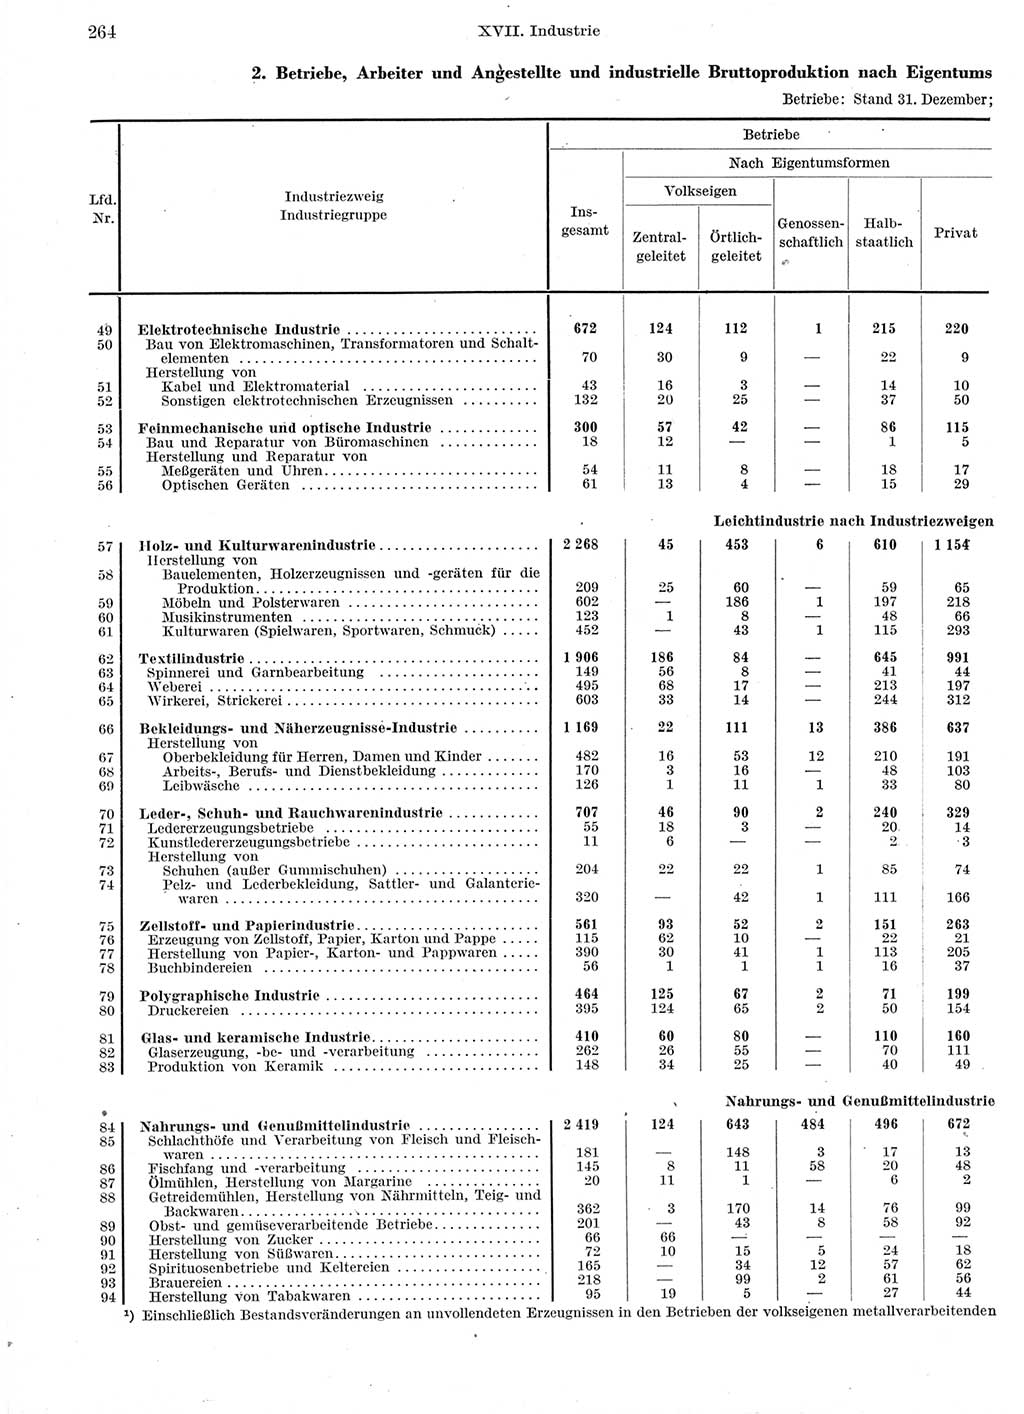 Statistisches Jahrbuch der Deutschen Demokratischen Republik (DDR) 1960-1961, Seite 264 (Stat. Jb. DDR 1960-1961, S. 264)